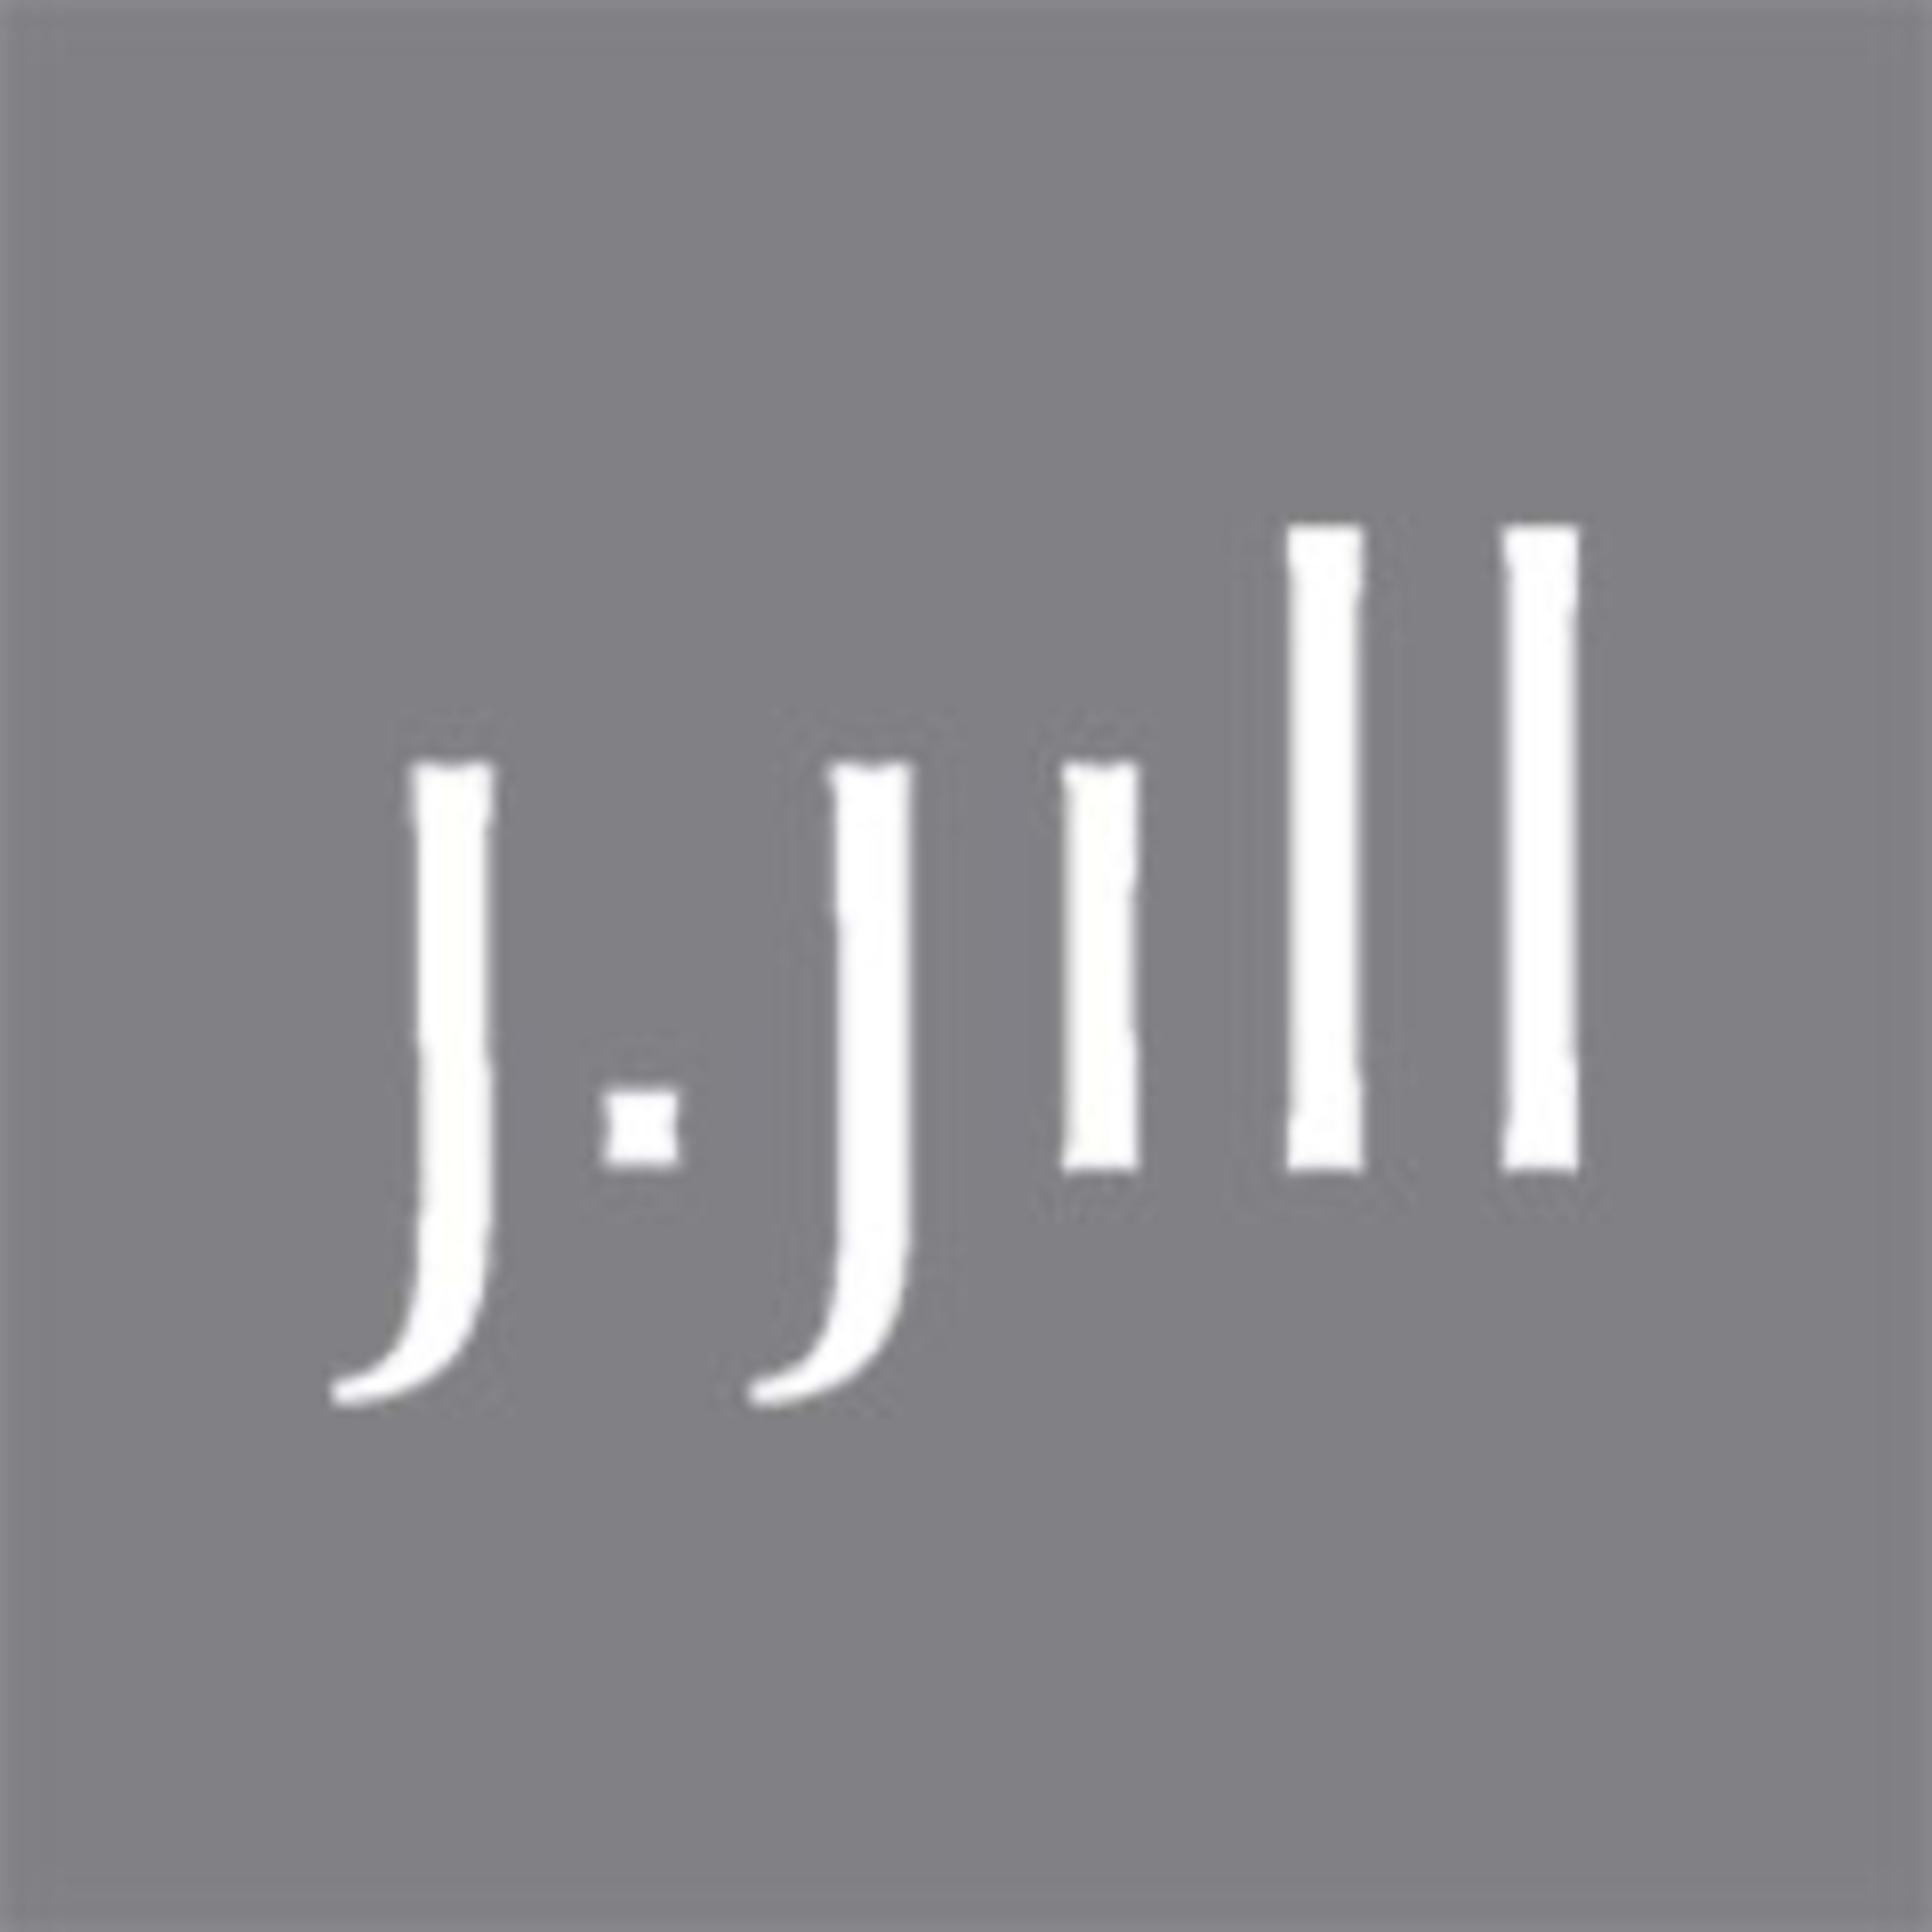 J.Jill Code